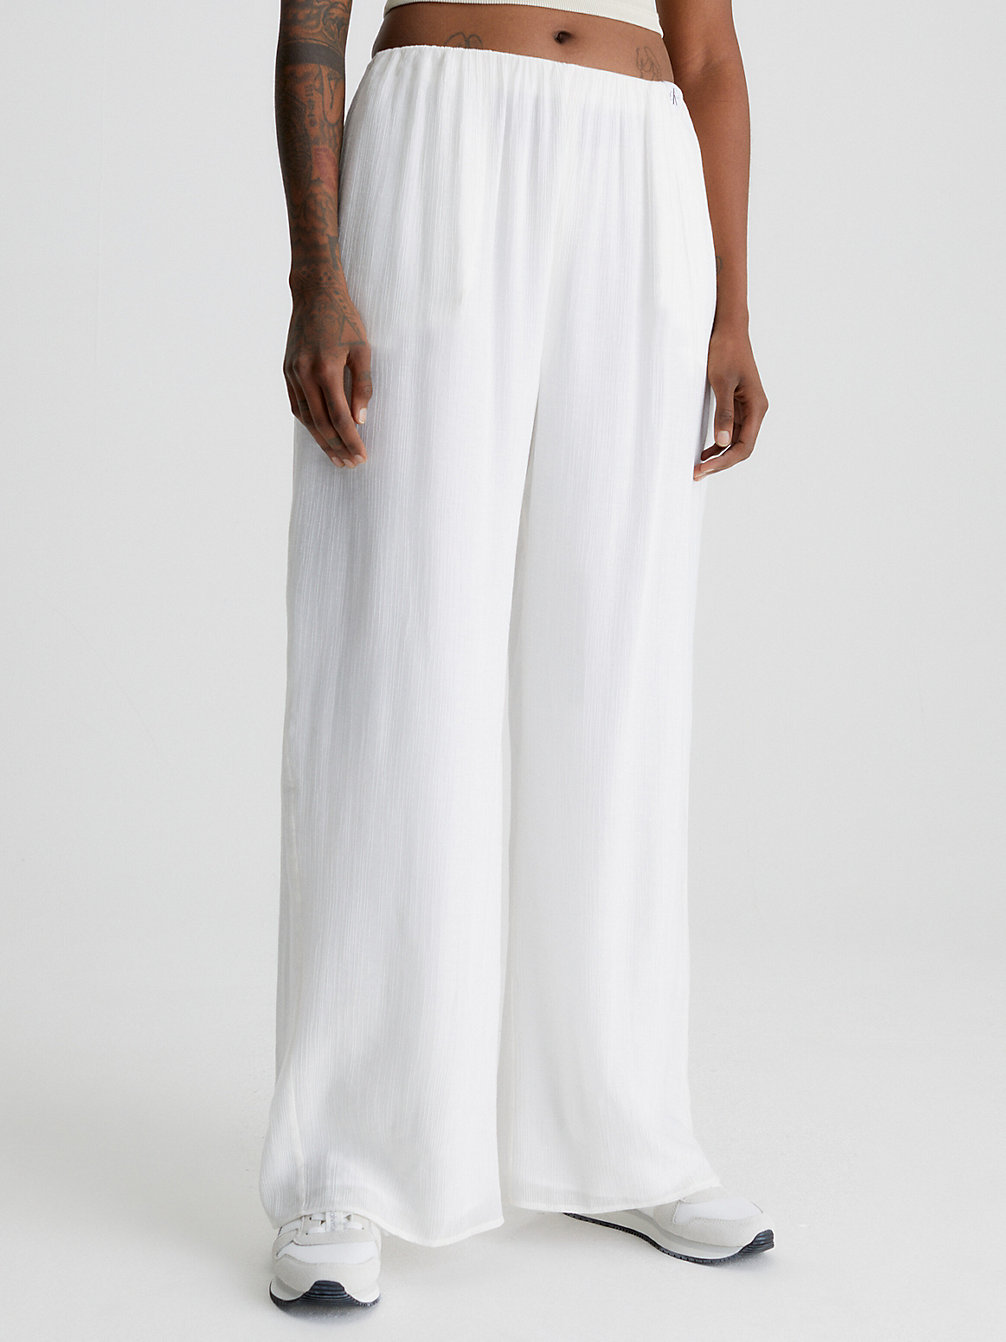 ANCIENT WHITE > Hose Mit Weitem Bein Aus Knittrigem Rayon > undefined Damen - Calvin Klein